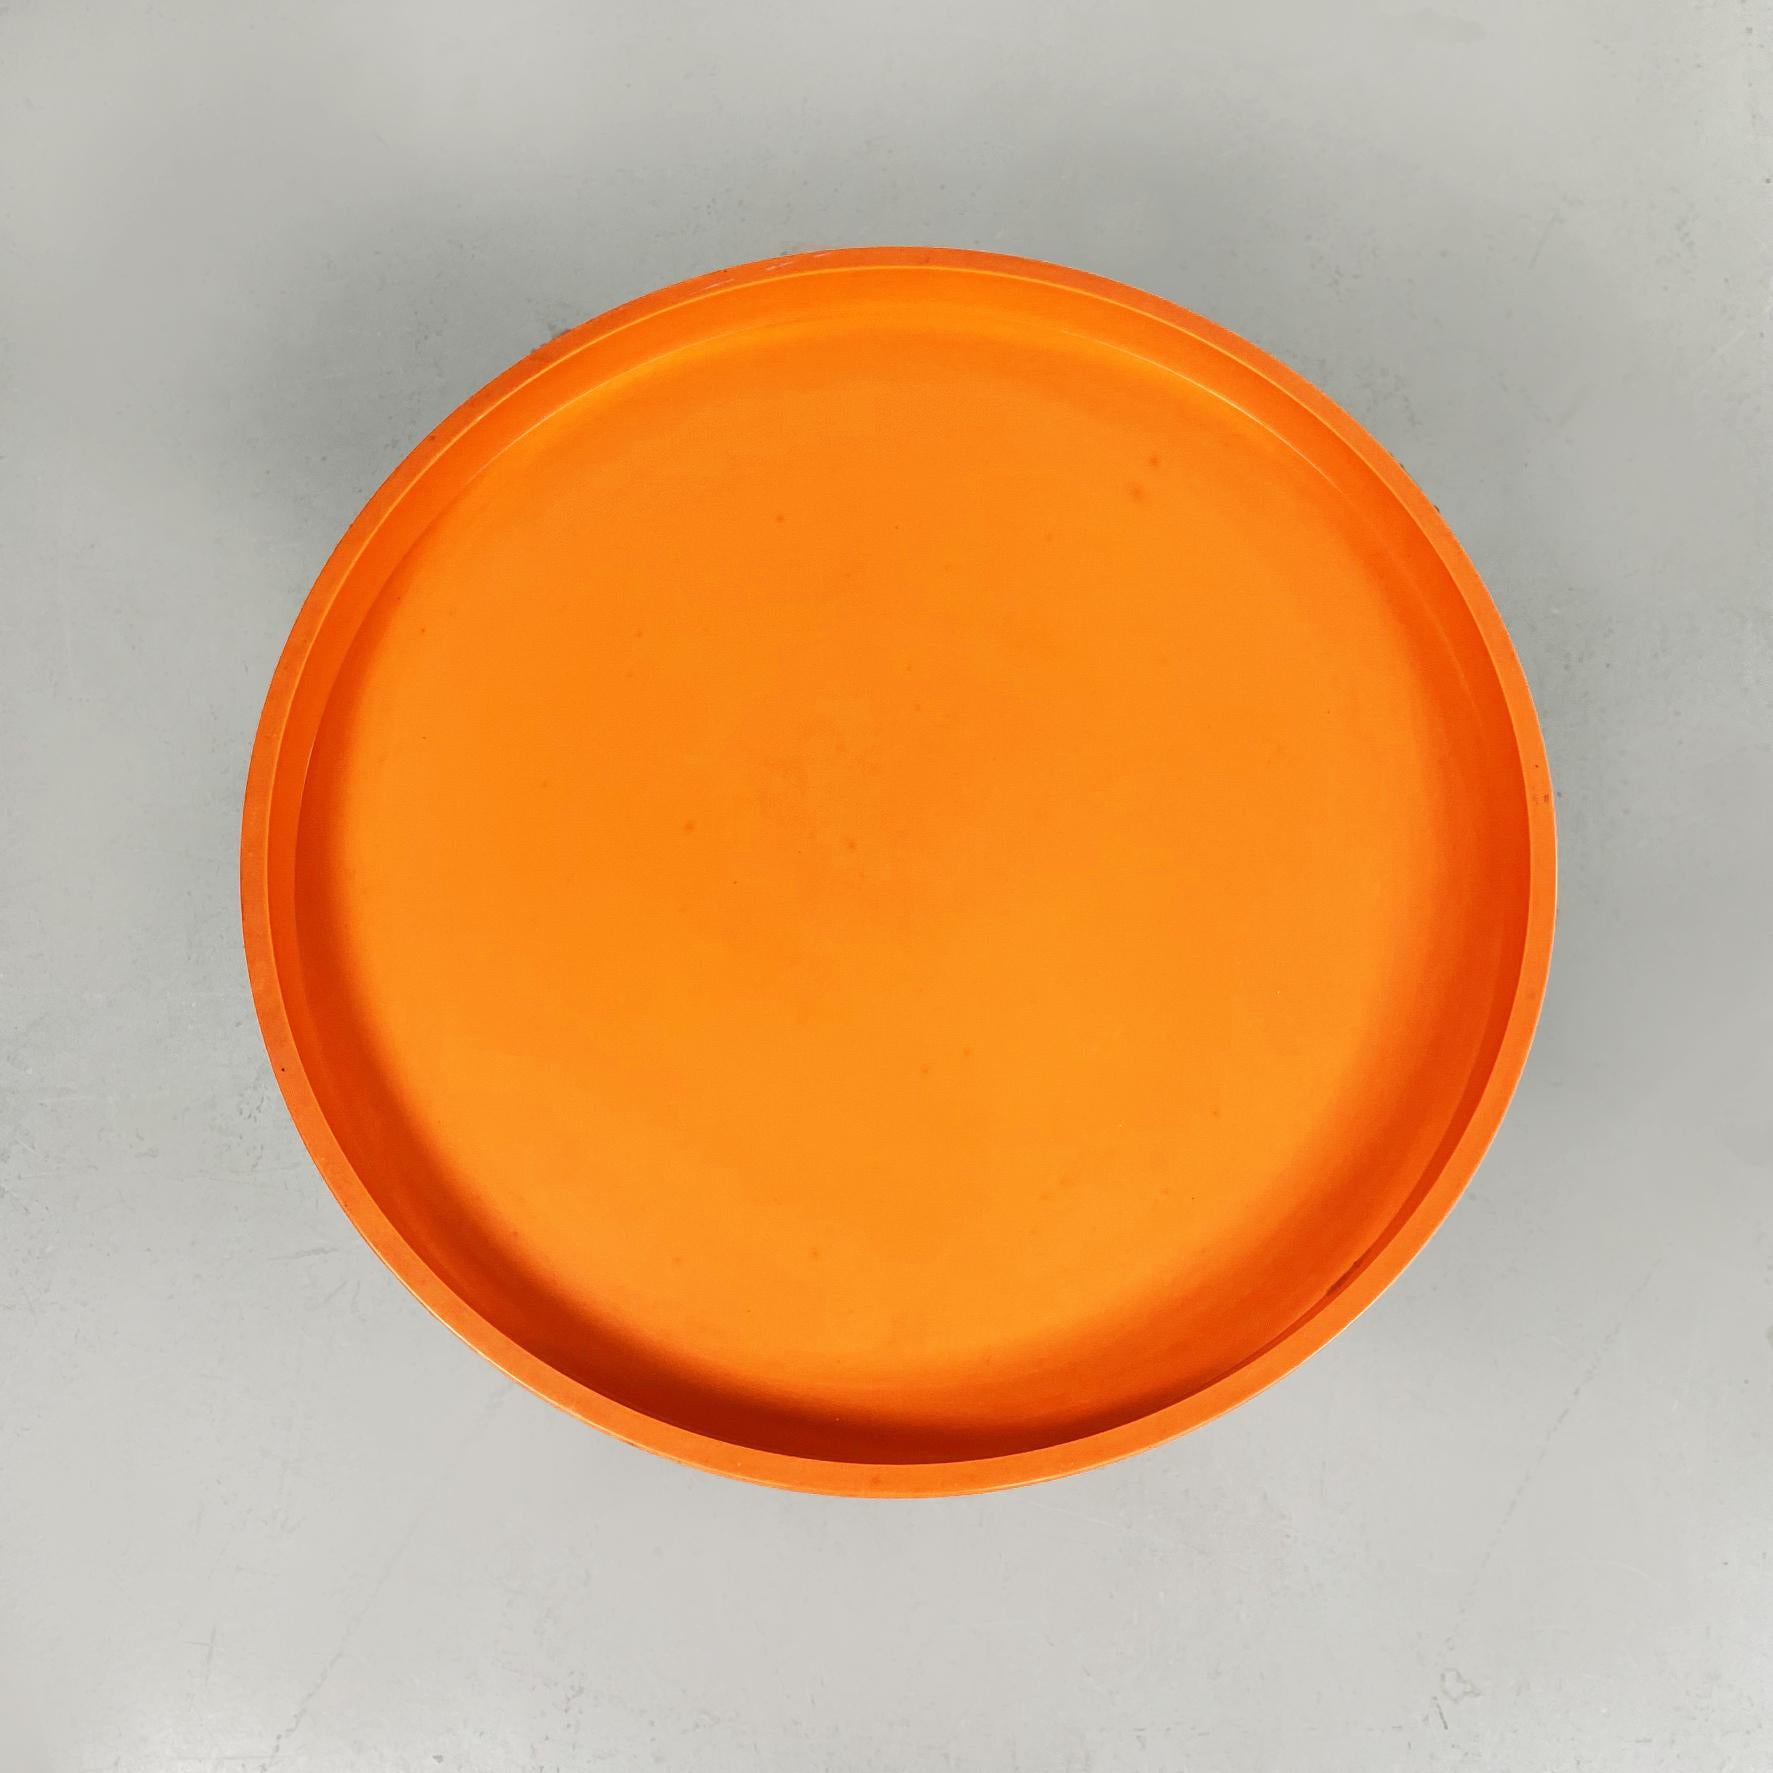 Late 20th Century Italian Space Age Orange Plastic Rocchetto Stools by Castiglioni Kartell, 1970s For Sale